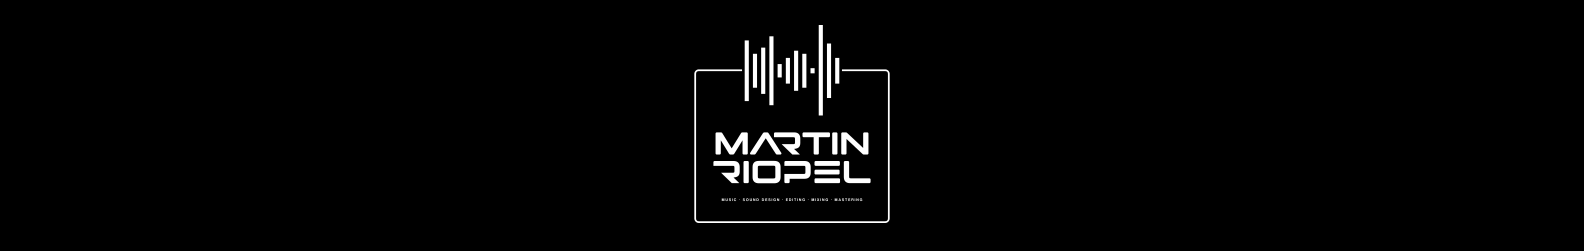 Martin Riopel background